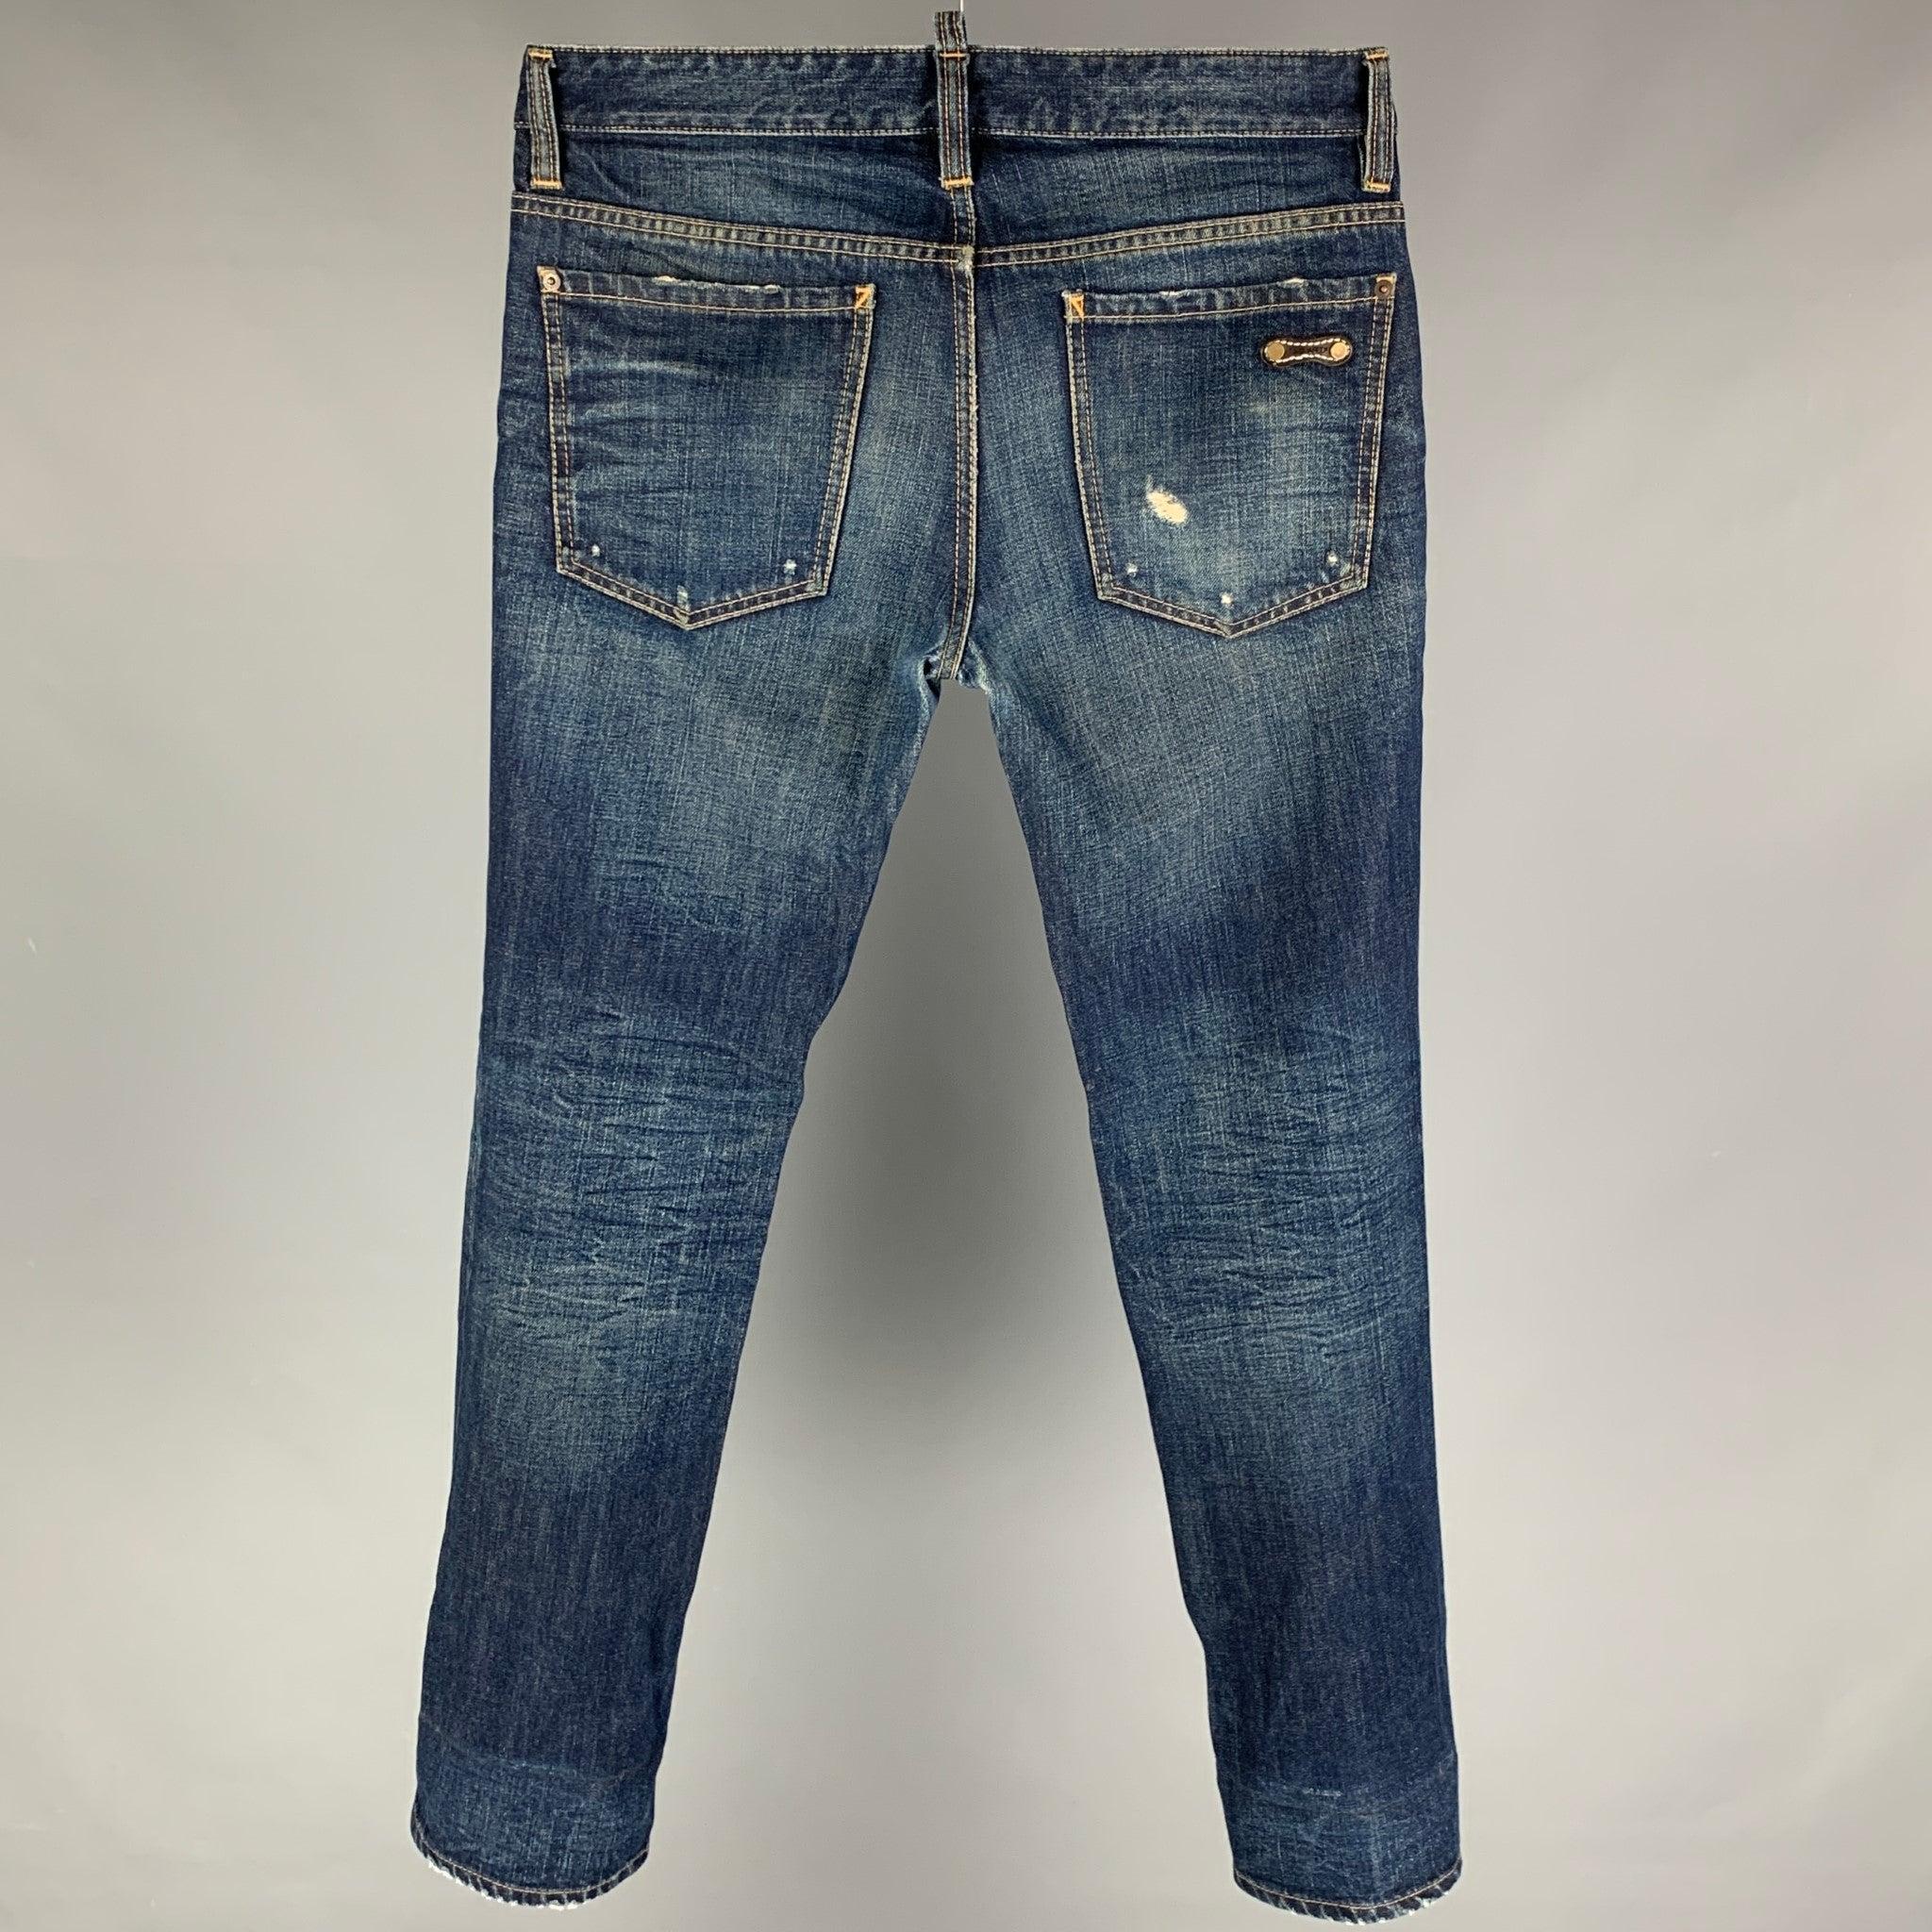 Die DSQUARED2 Jeans aus blauem MATERIAL hat eine schmale Passform, Kontrastnähte und einen Knopfverschluss. Hergestellt in Italien. Sehr gut
Gebrauchtes Zustand. 

Markiert:   46 

Abmessungen: 
  Taille: 33 Zoll  Steigung: 10 Zoll  Innennaht: 32